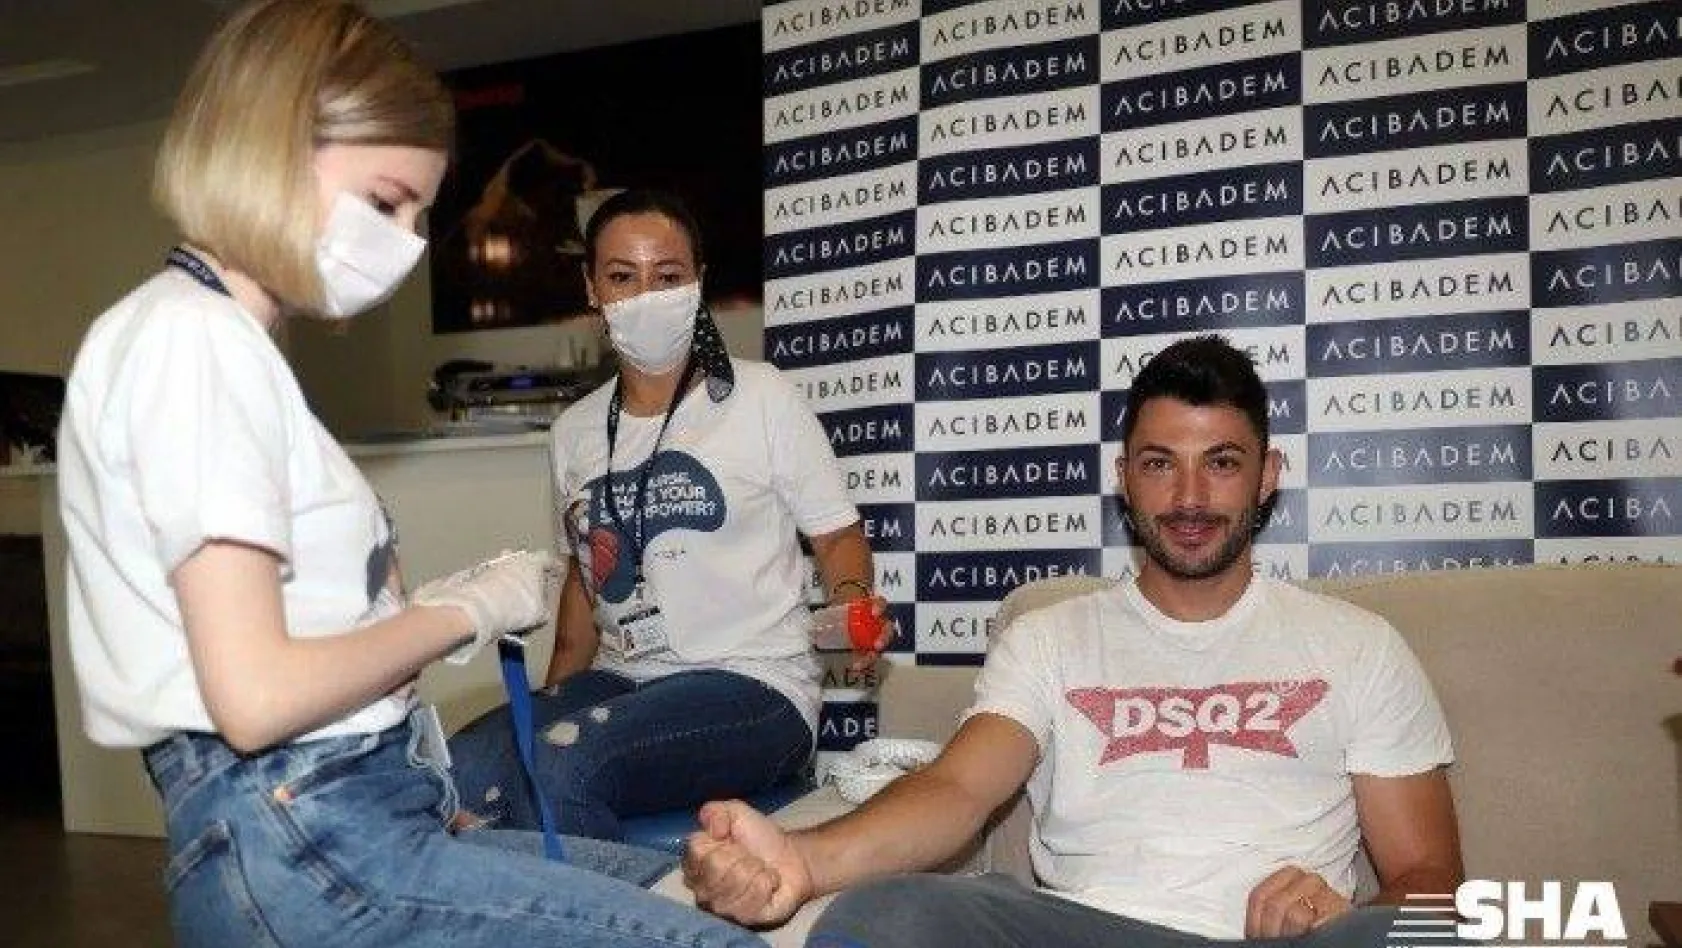 Fenerbahçe sağlık kontrolünden geçti